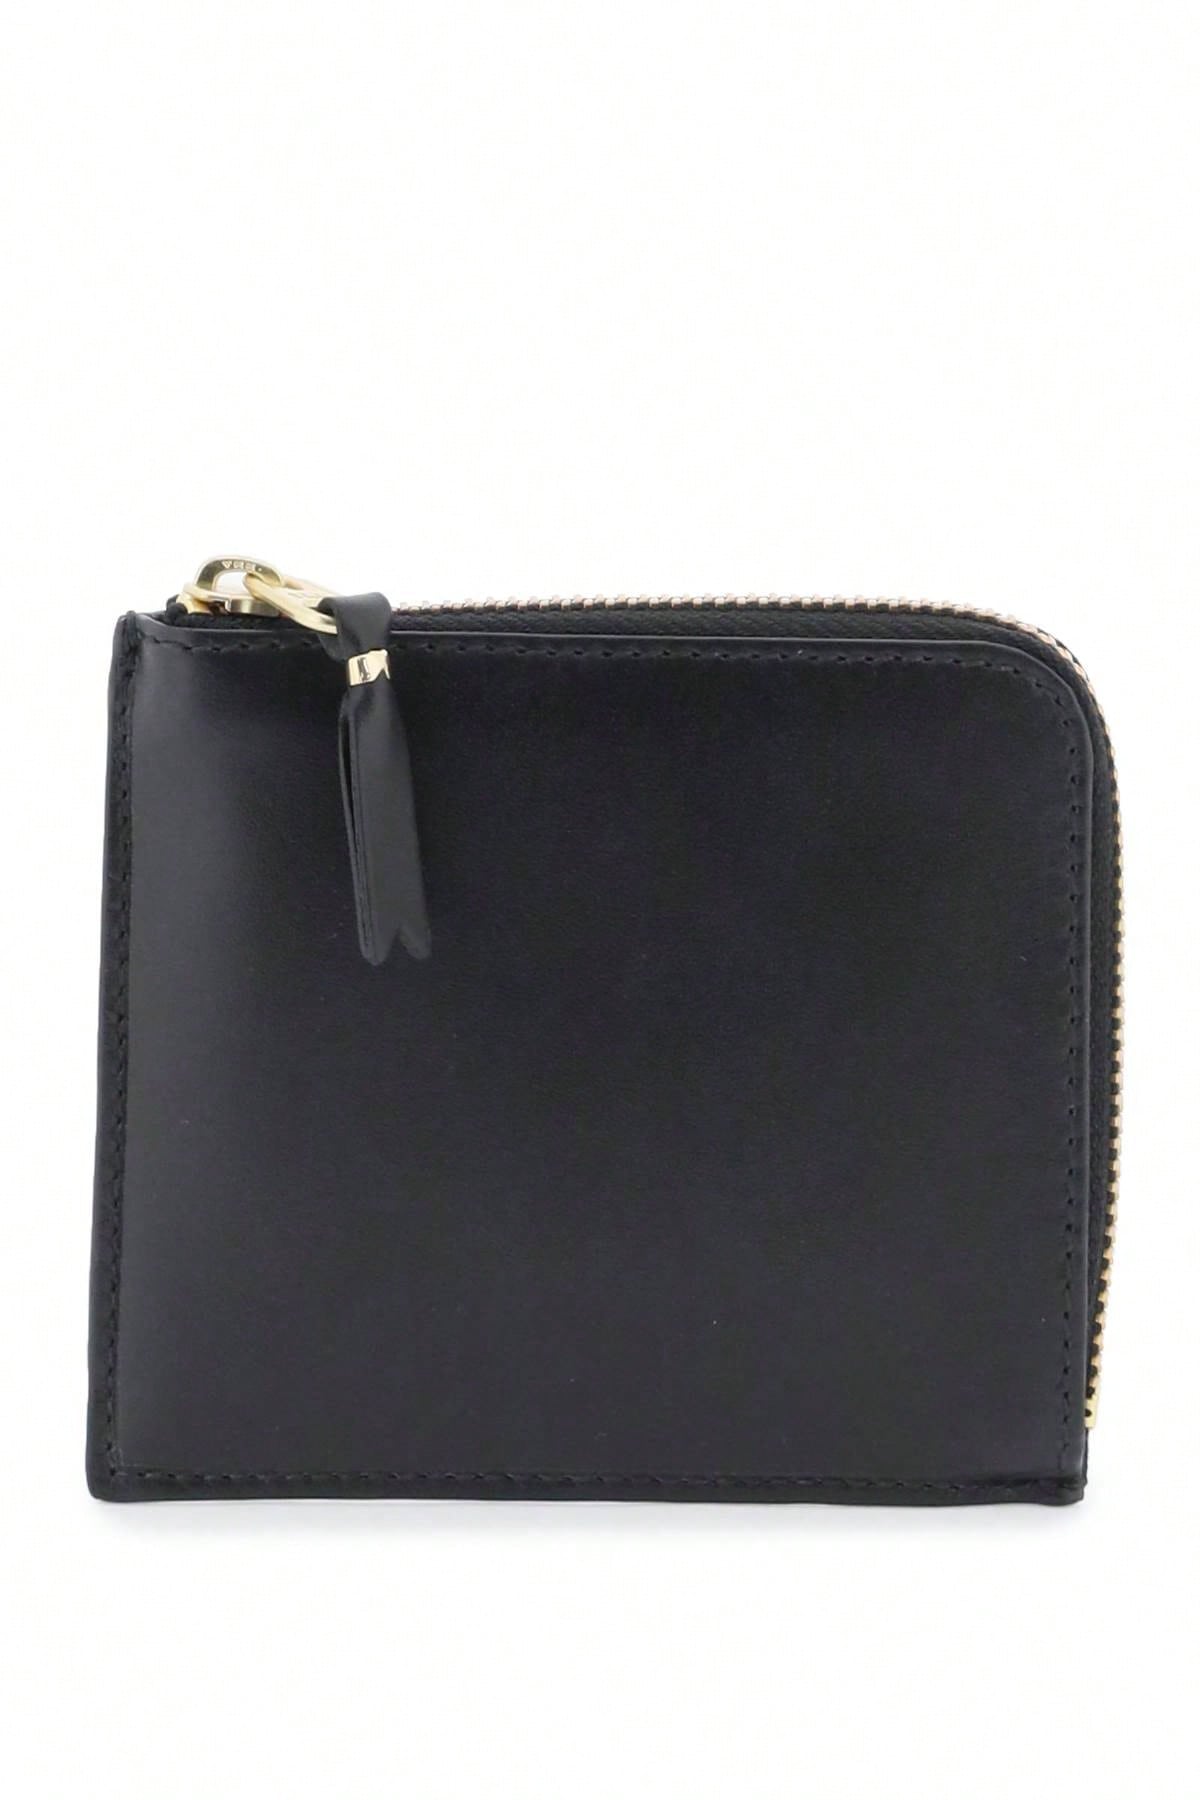 Кожаный мини-кошелек Comme Des Garcons Wallet, черный портмоне comme des garcons натуральная кожа синий